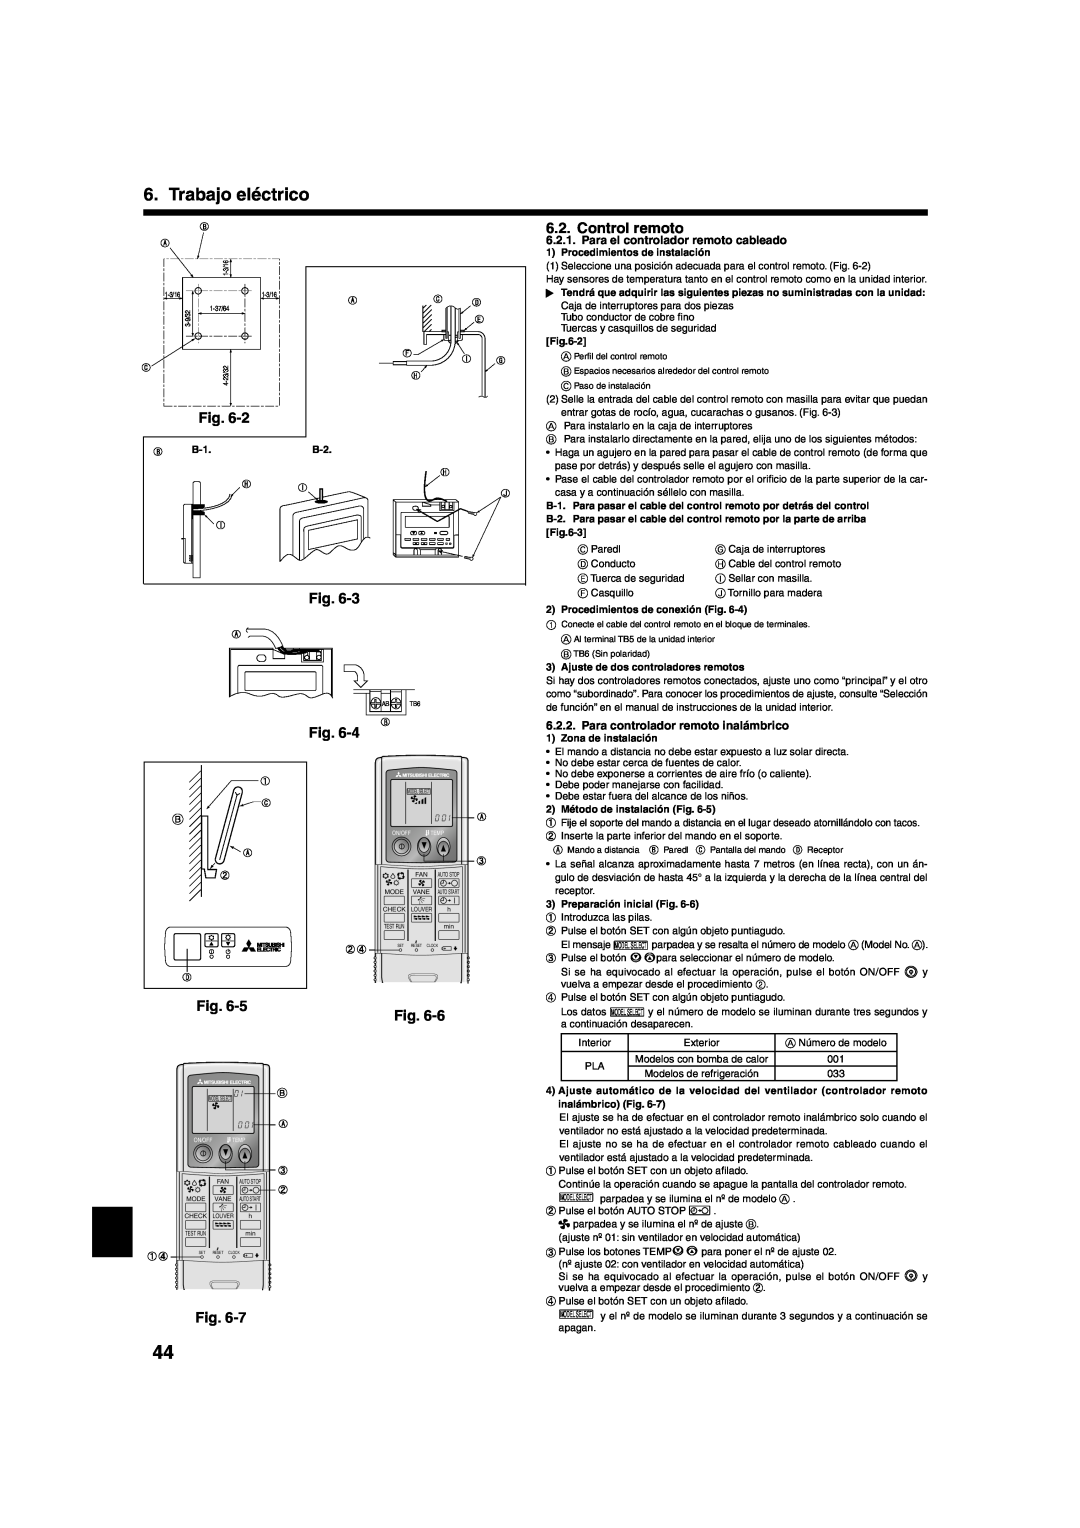 Mitsumi electronic PLA-ABA installation manual Trabajo eléctrico, Control remoto, Para el controlador remoto cableado 